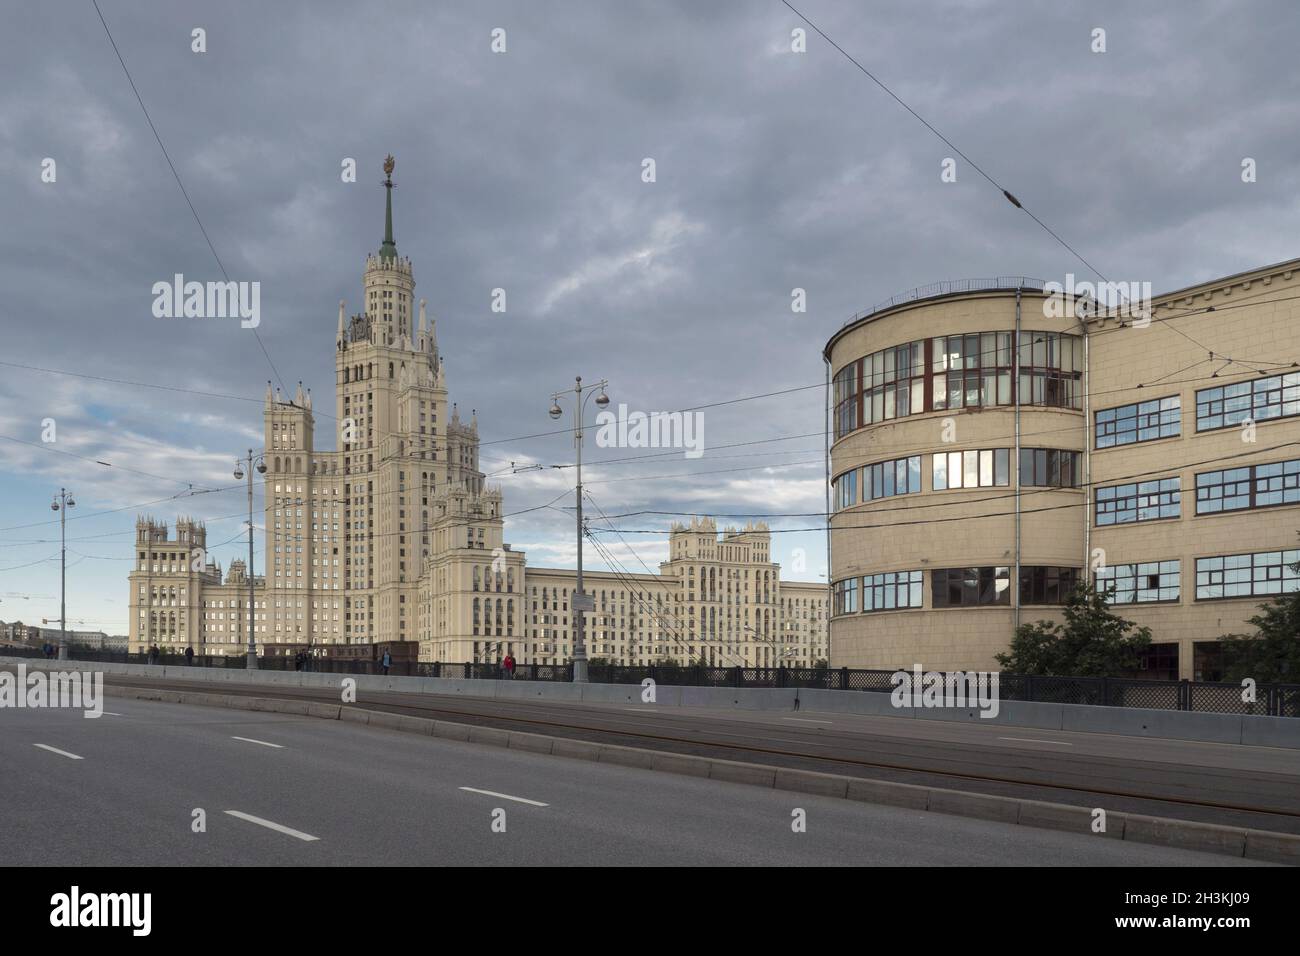 Rusia, Moscú, vistas de la ciudad, Arquitectura Soviet-Era, edificios de diferentes estilos. Foto de stock